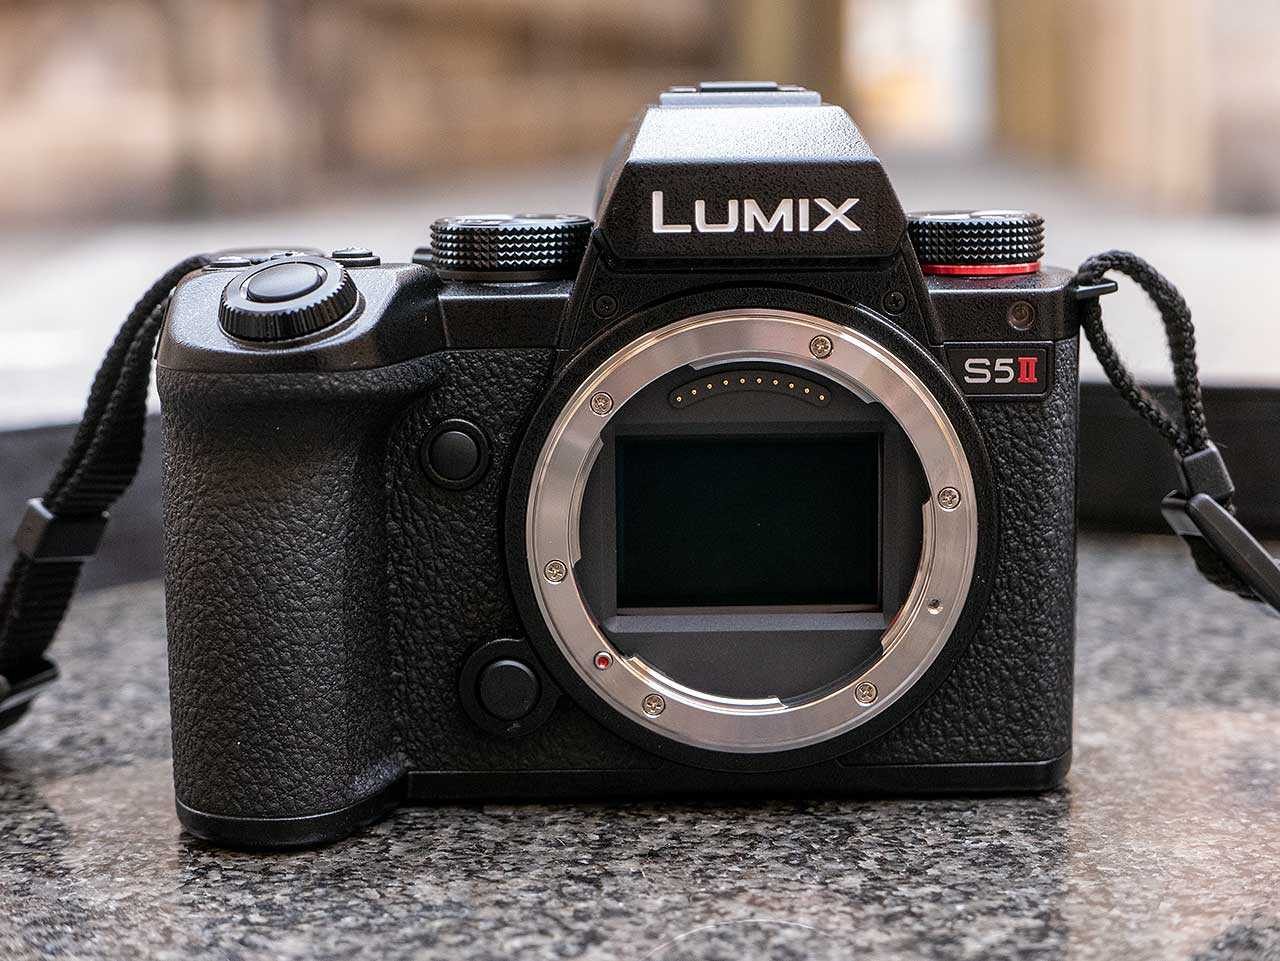 Meter Speciaal vergelijking Panasonic Lumix S5 II Review | Photography Blog